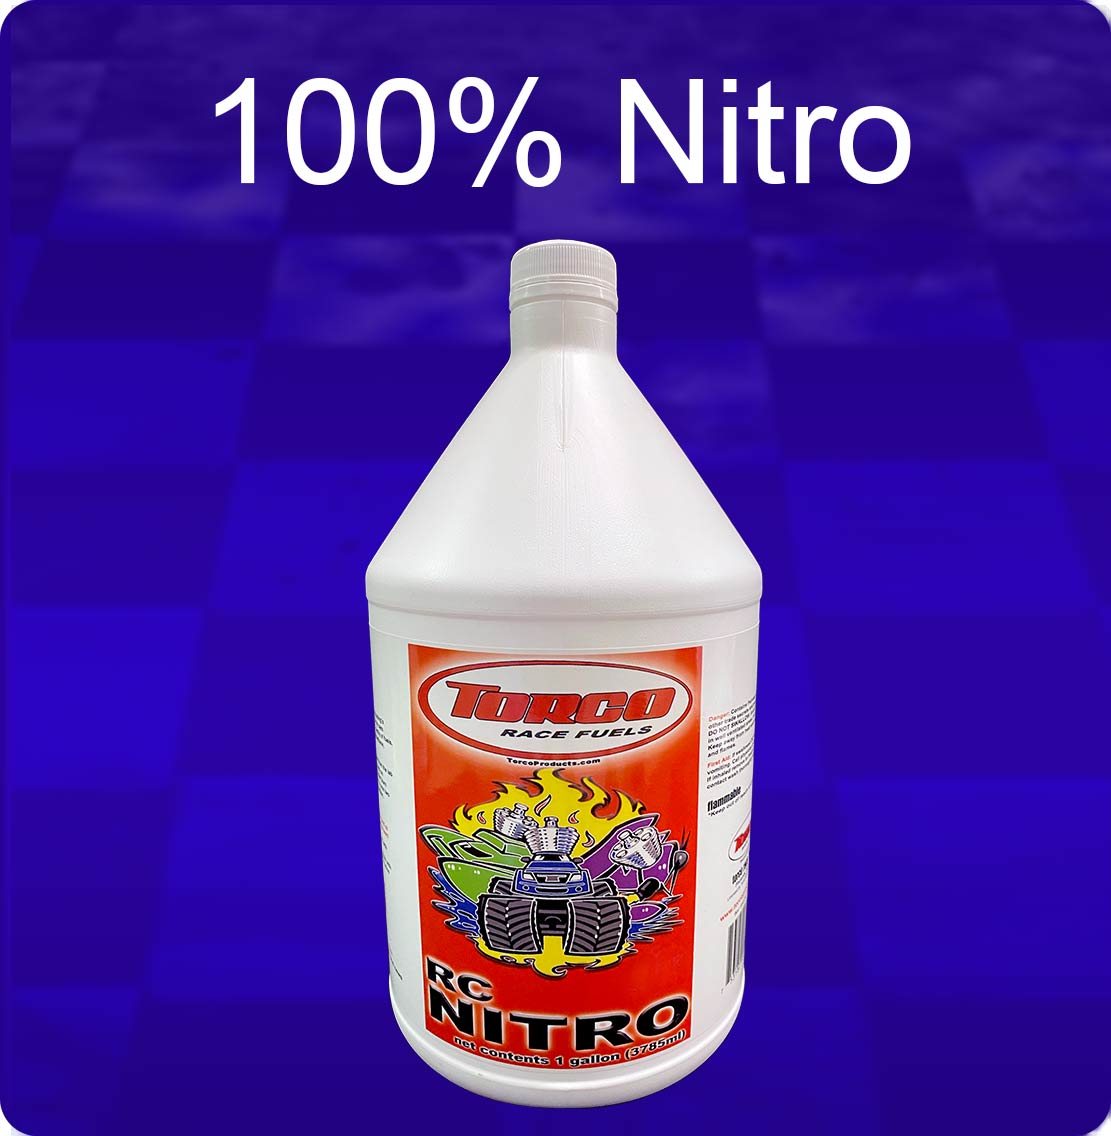 NITROMETANO NITRO 100 - MM RACING FUEL